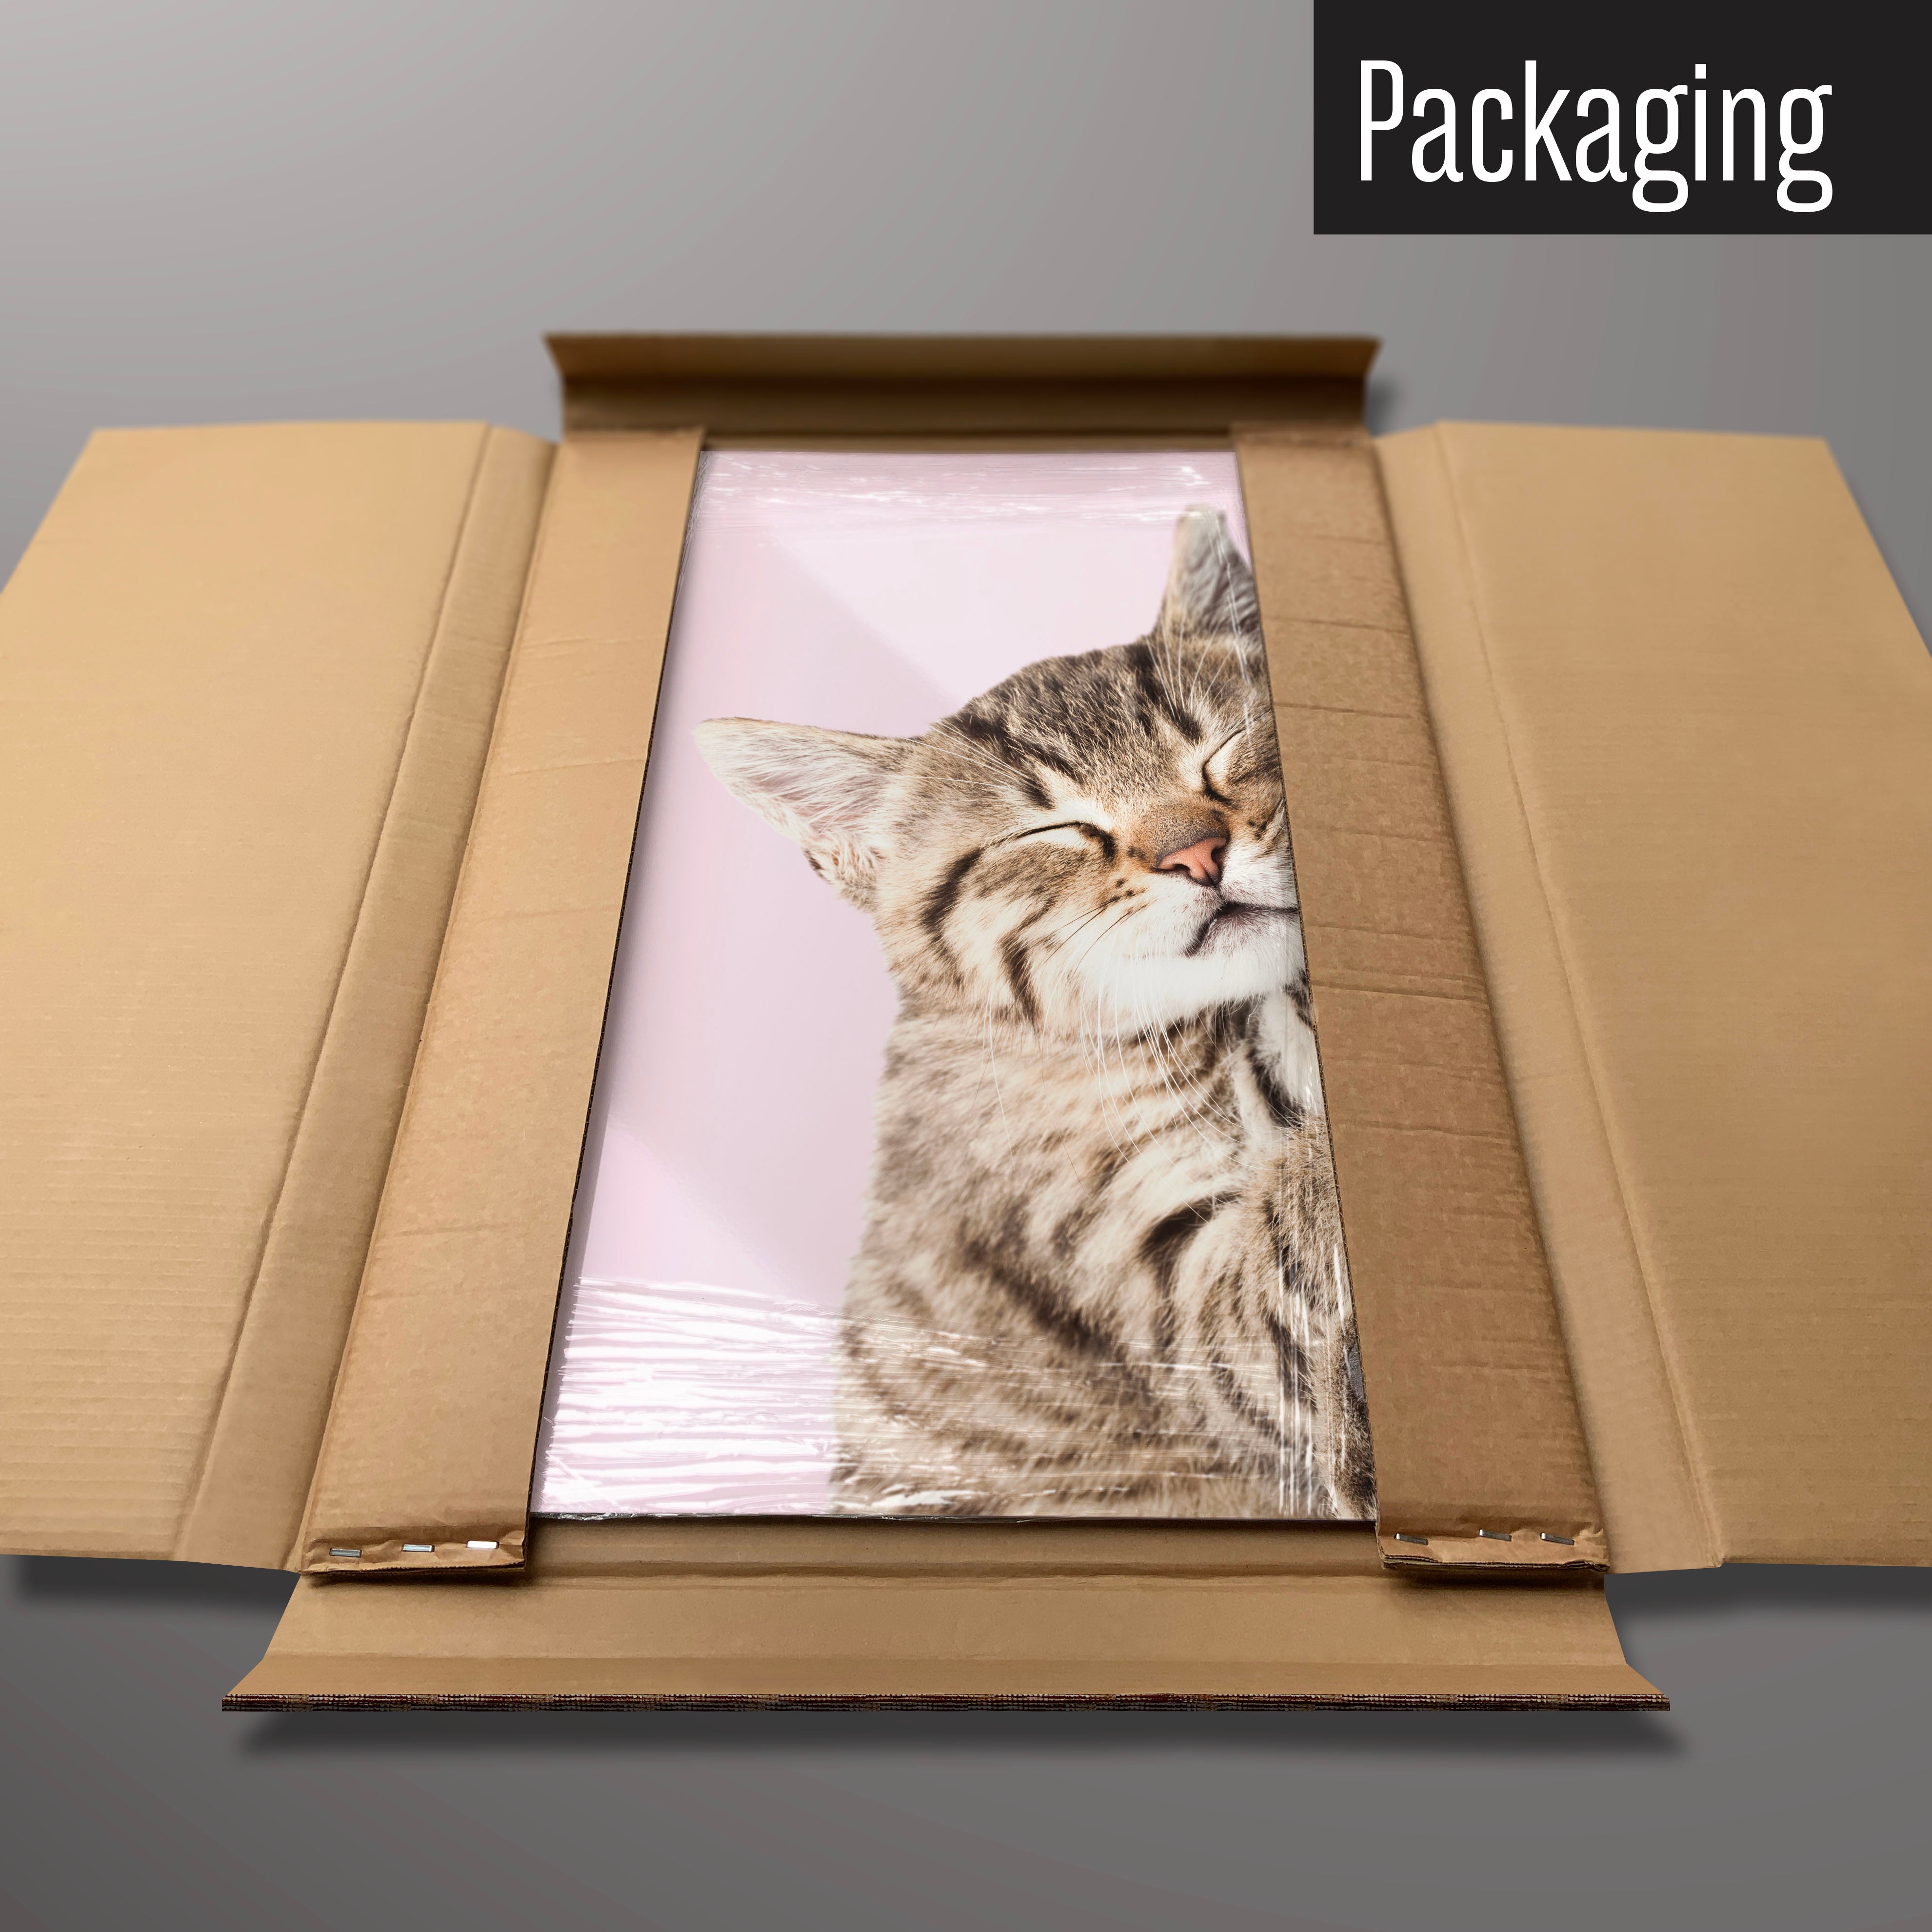 A tabby kitten magnetic board in it’s cardboard packaging